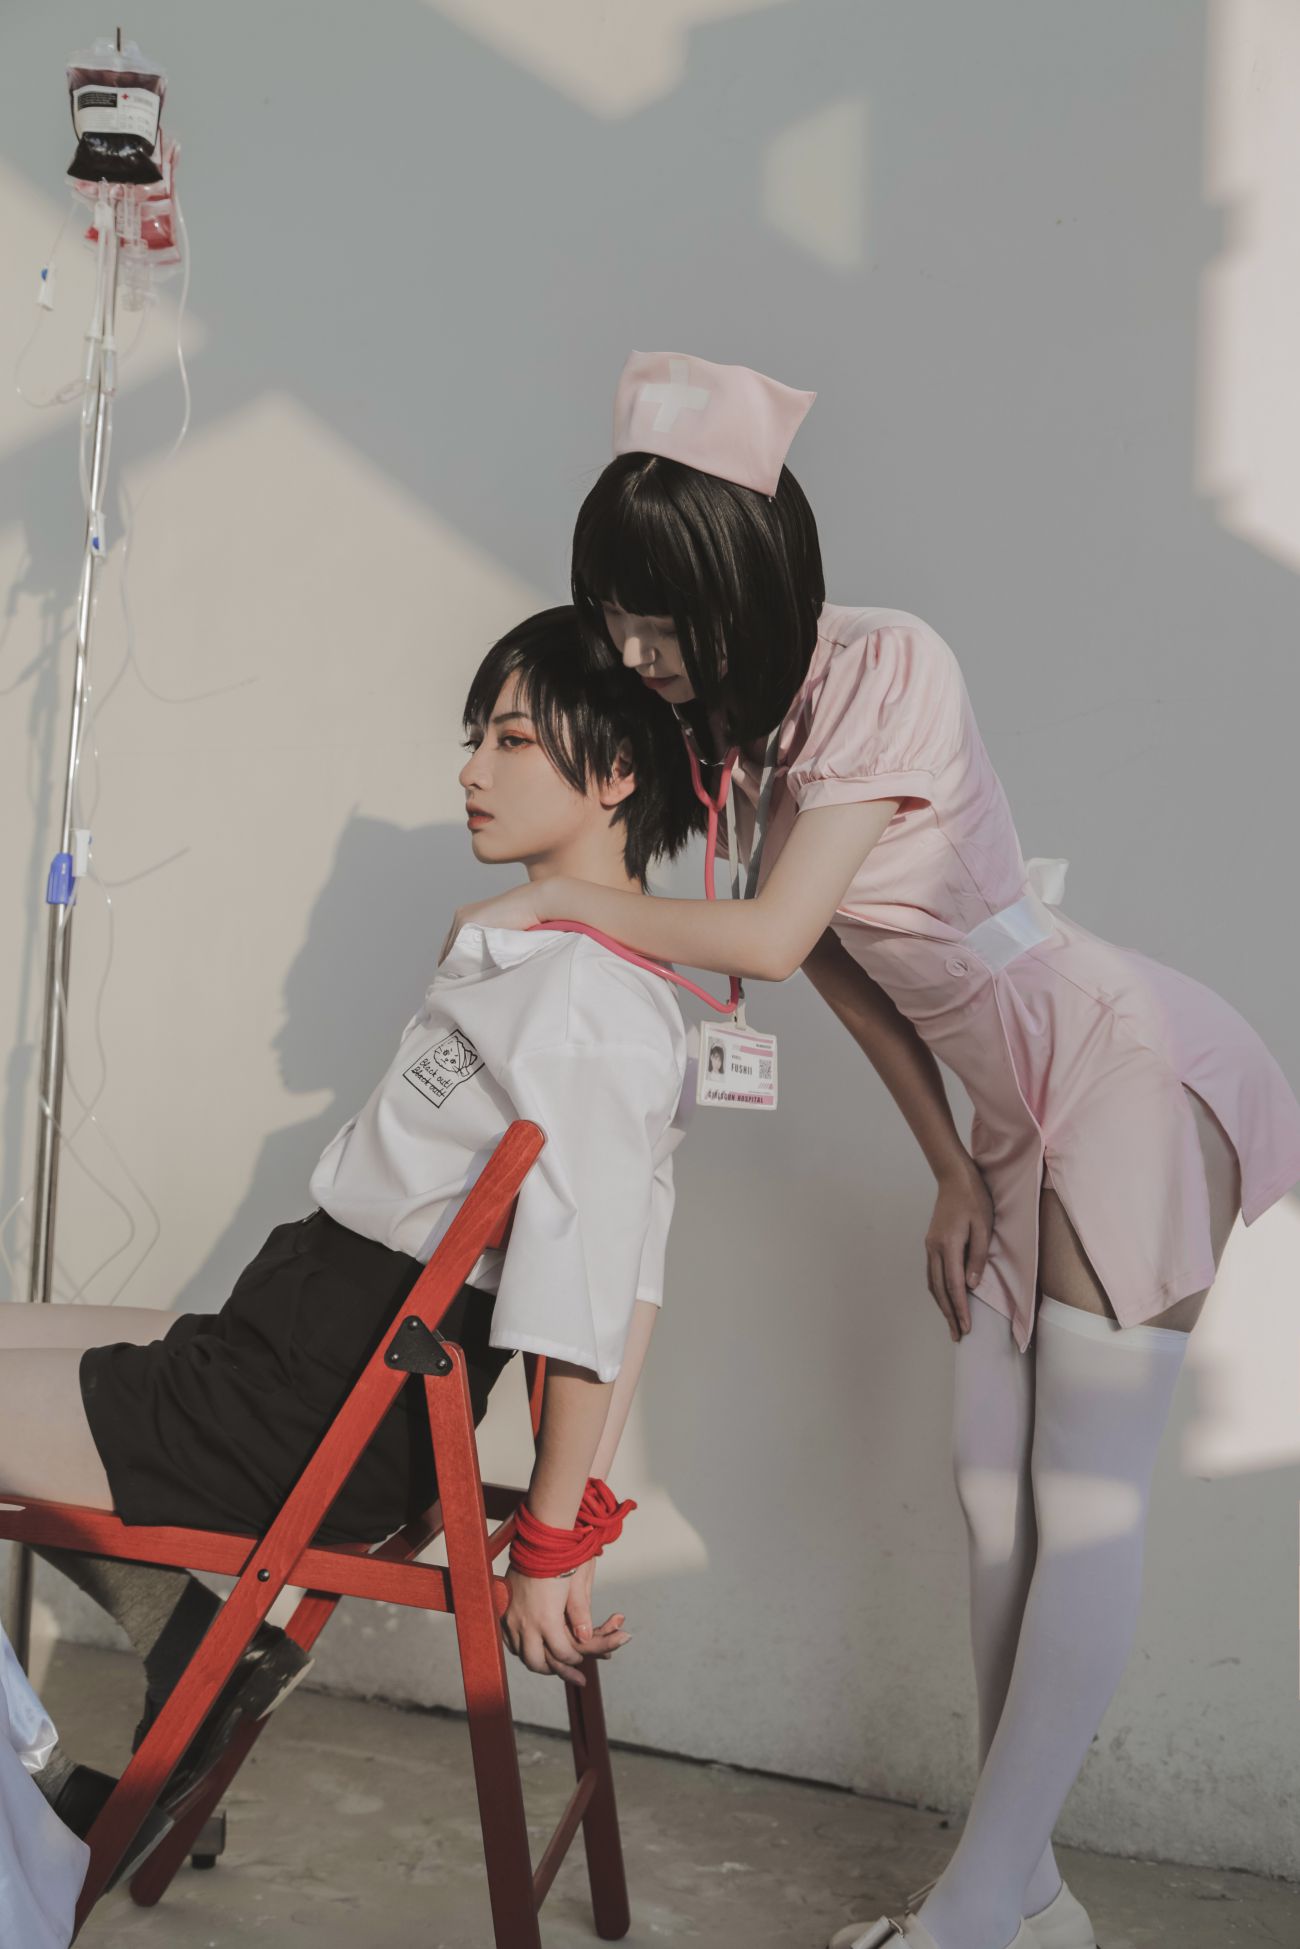 微博美少女Fushii海堂Cosplay性感写真护士 (4)